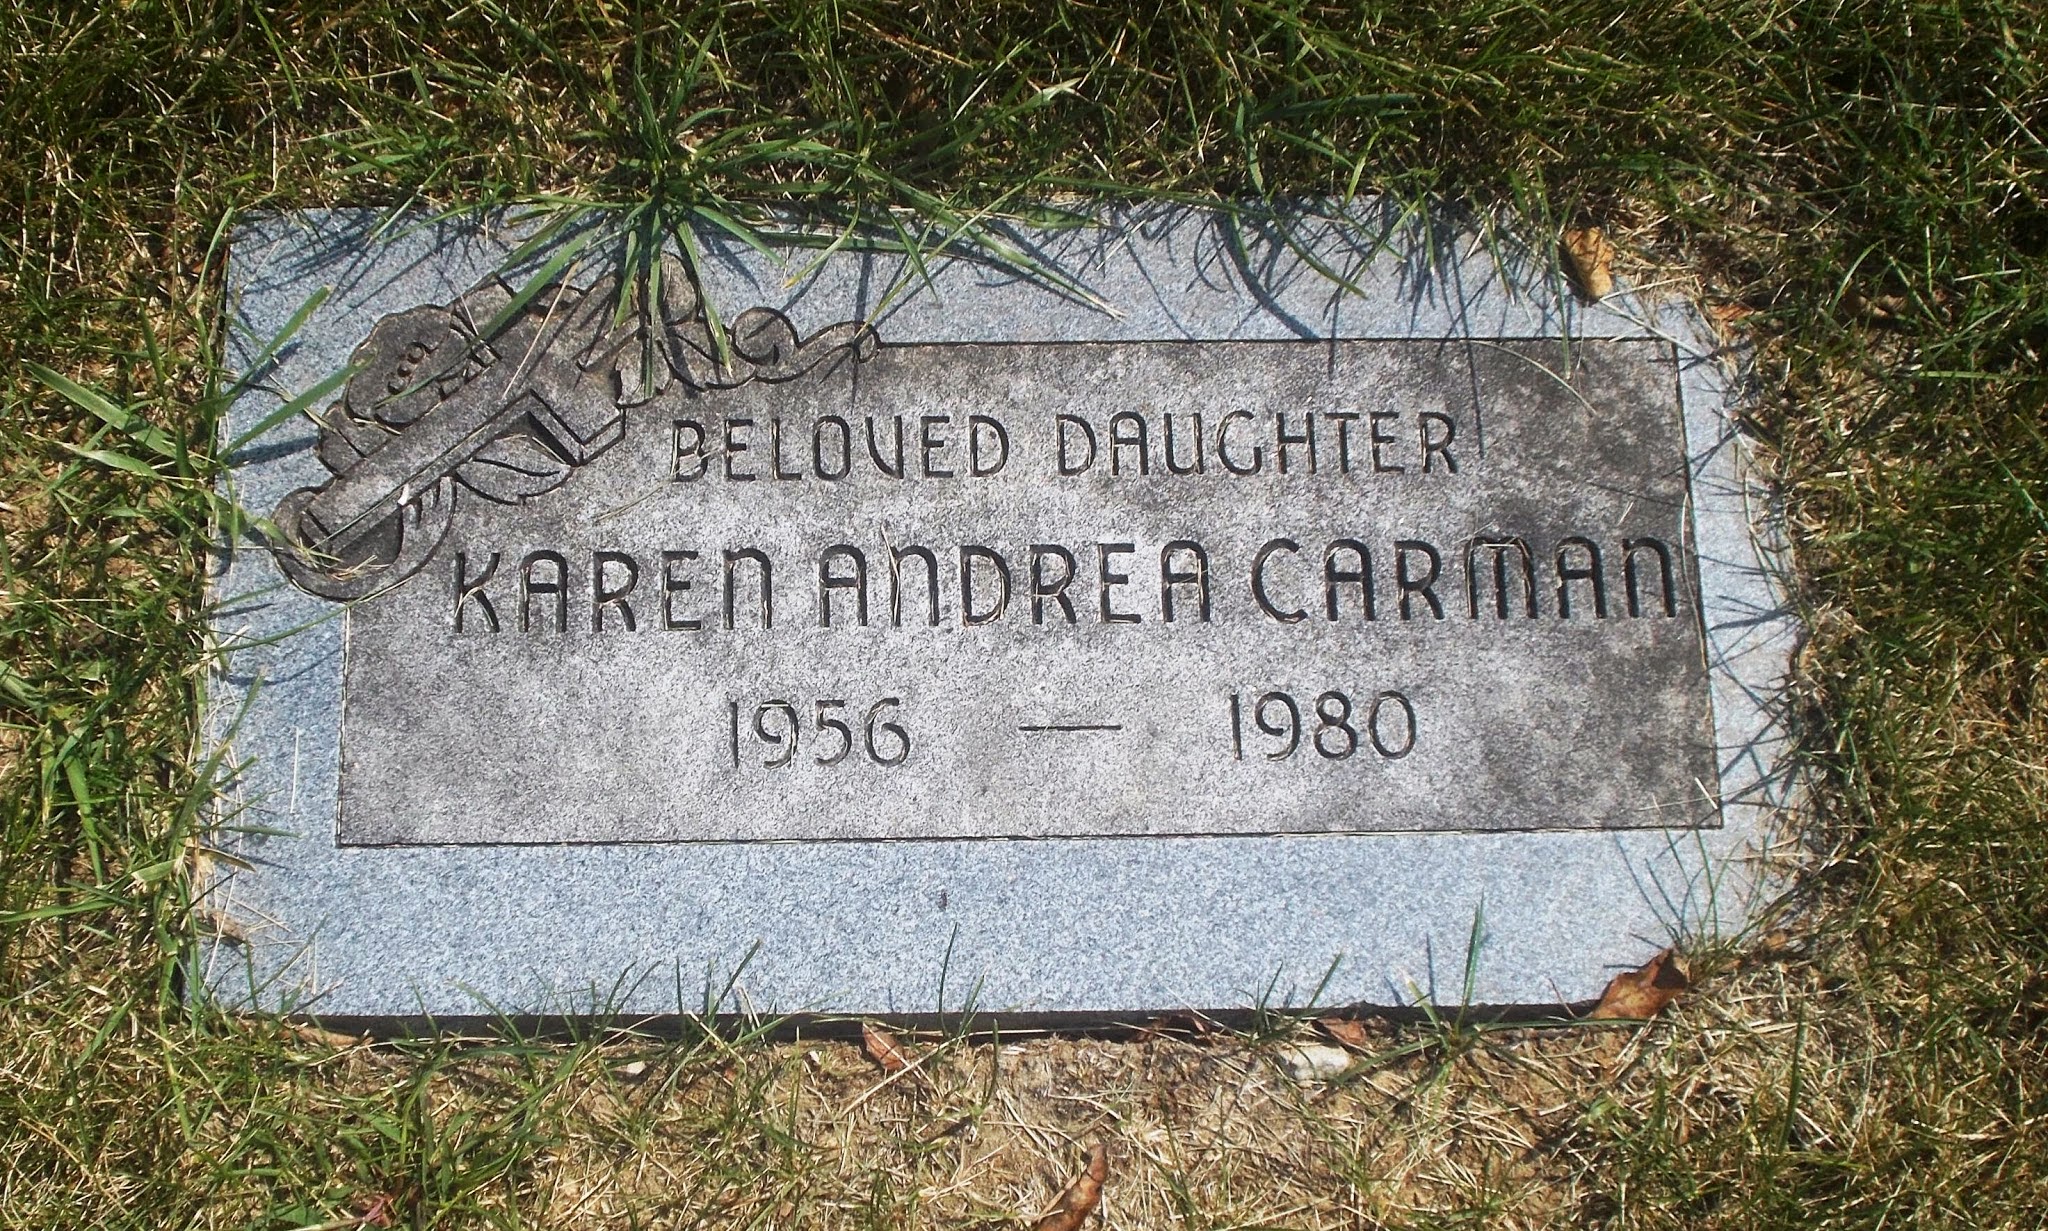 Karen Andrea Carman